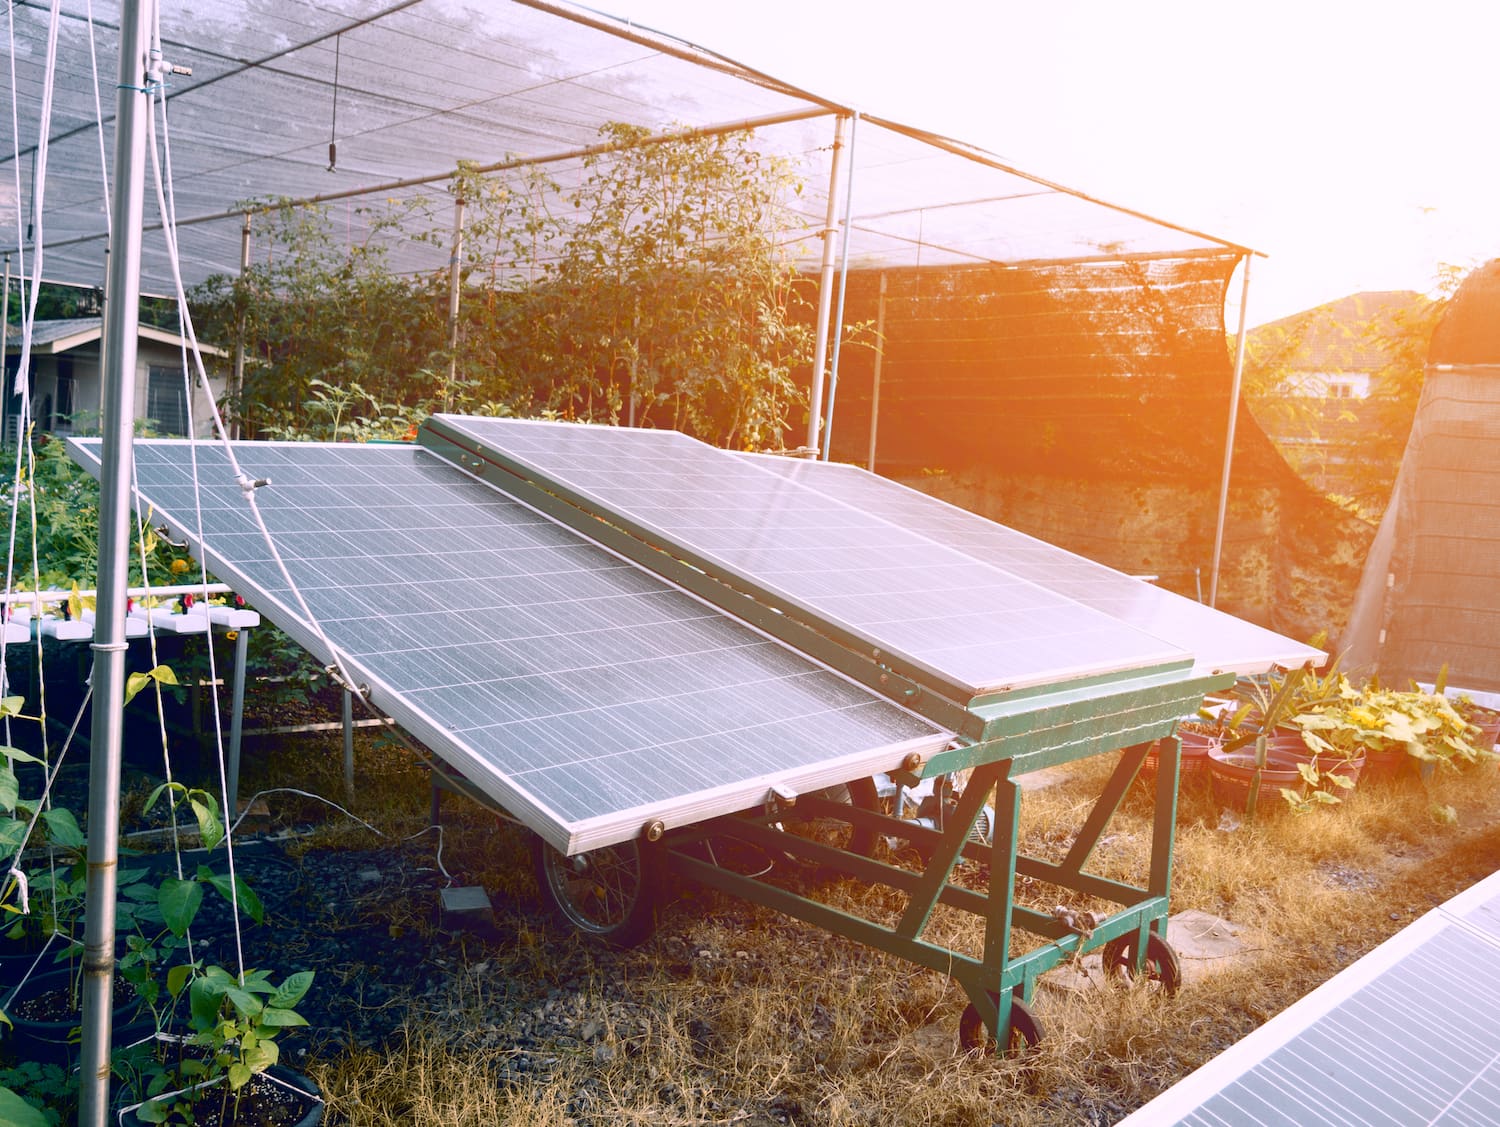 Solarzellen für die Landwirtschaft. Anlagen- und Kraftwerkskonzept. Geschäfts- und Industriekonzept.